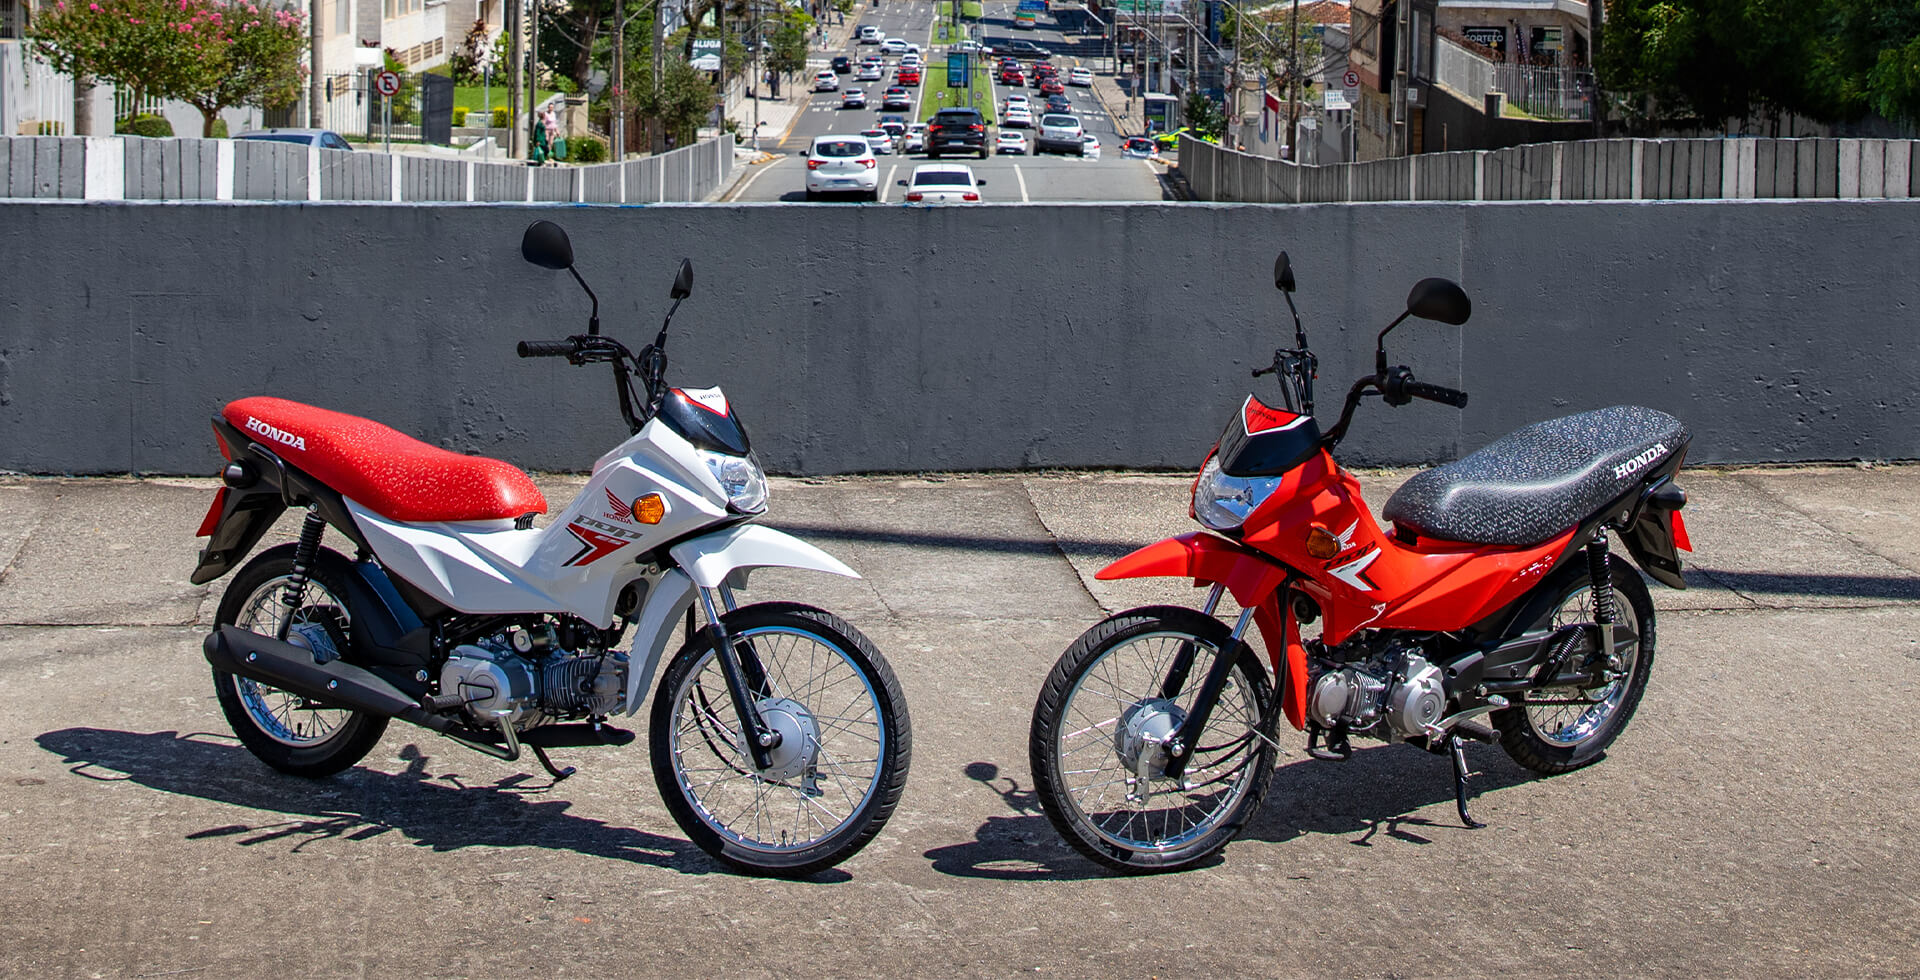 Duas Motos Pop 110i ES nas cores Branco Ross White e Vermelho Maceio Red estacionadas em cenário urbano.